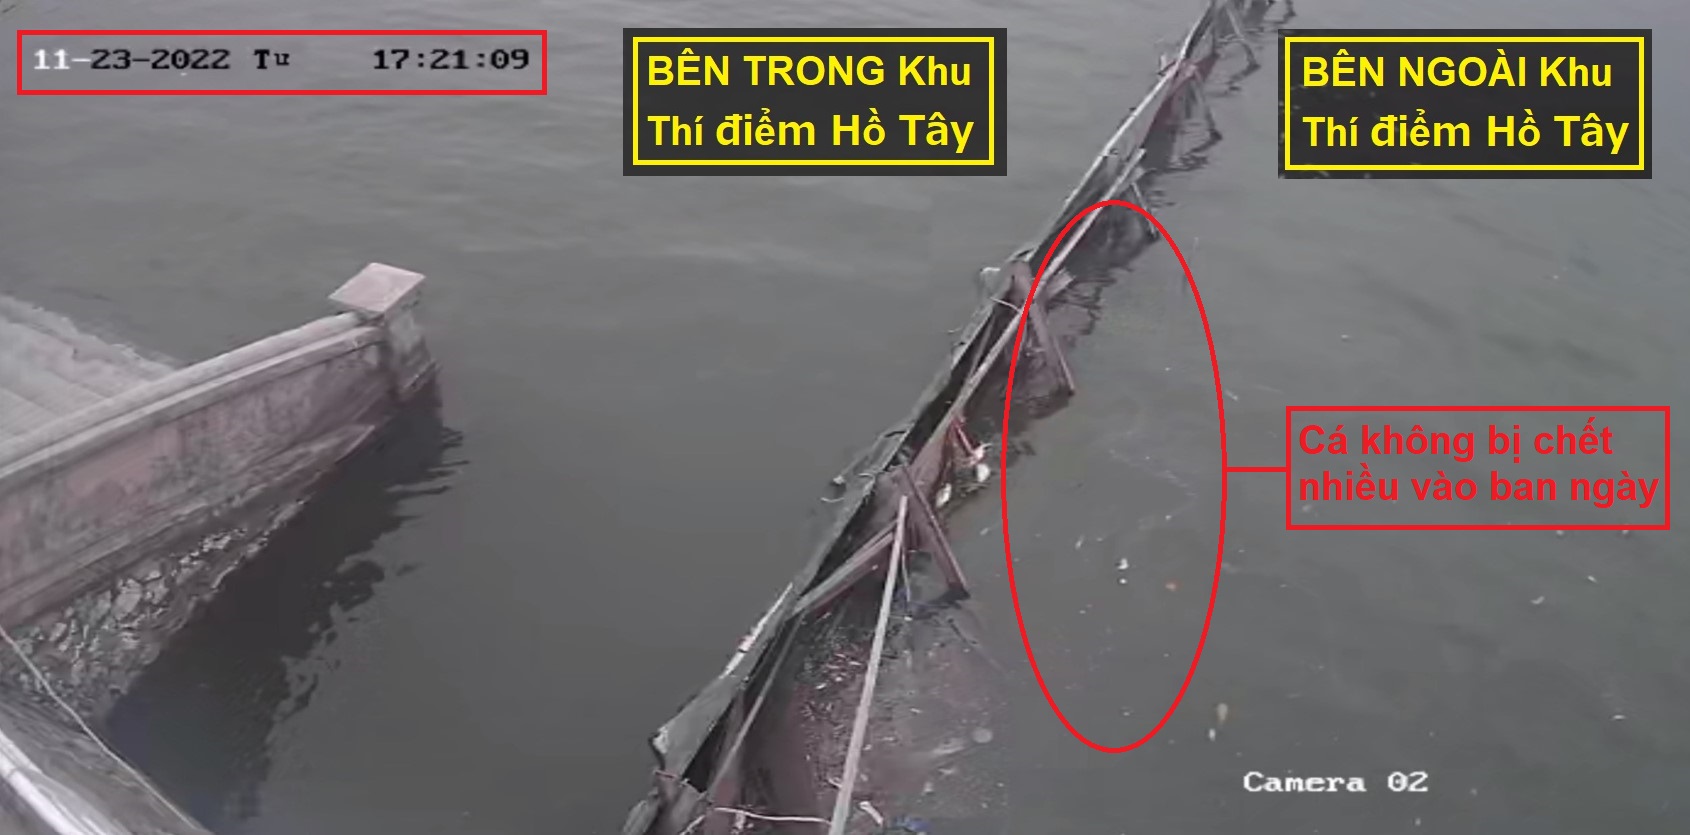 Hình ảnh camera giám sát chụp được ảnh cá không bị chết nhiều vào ban ngày (17h21p chiều ngày 23/11)